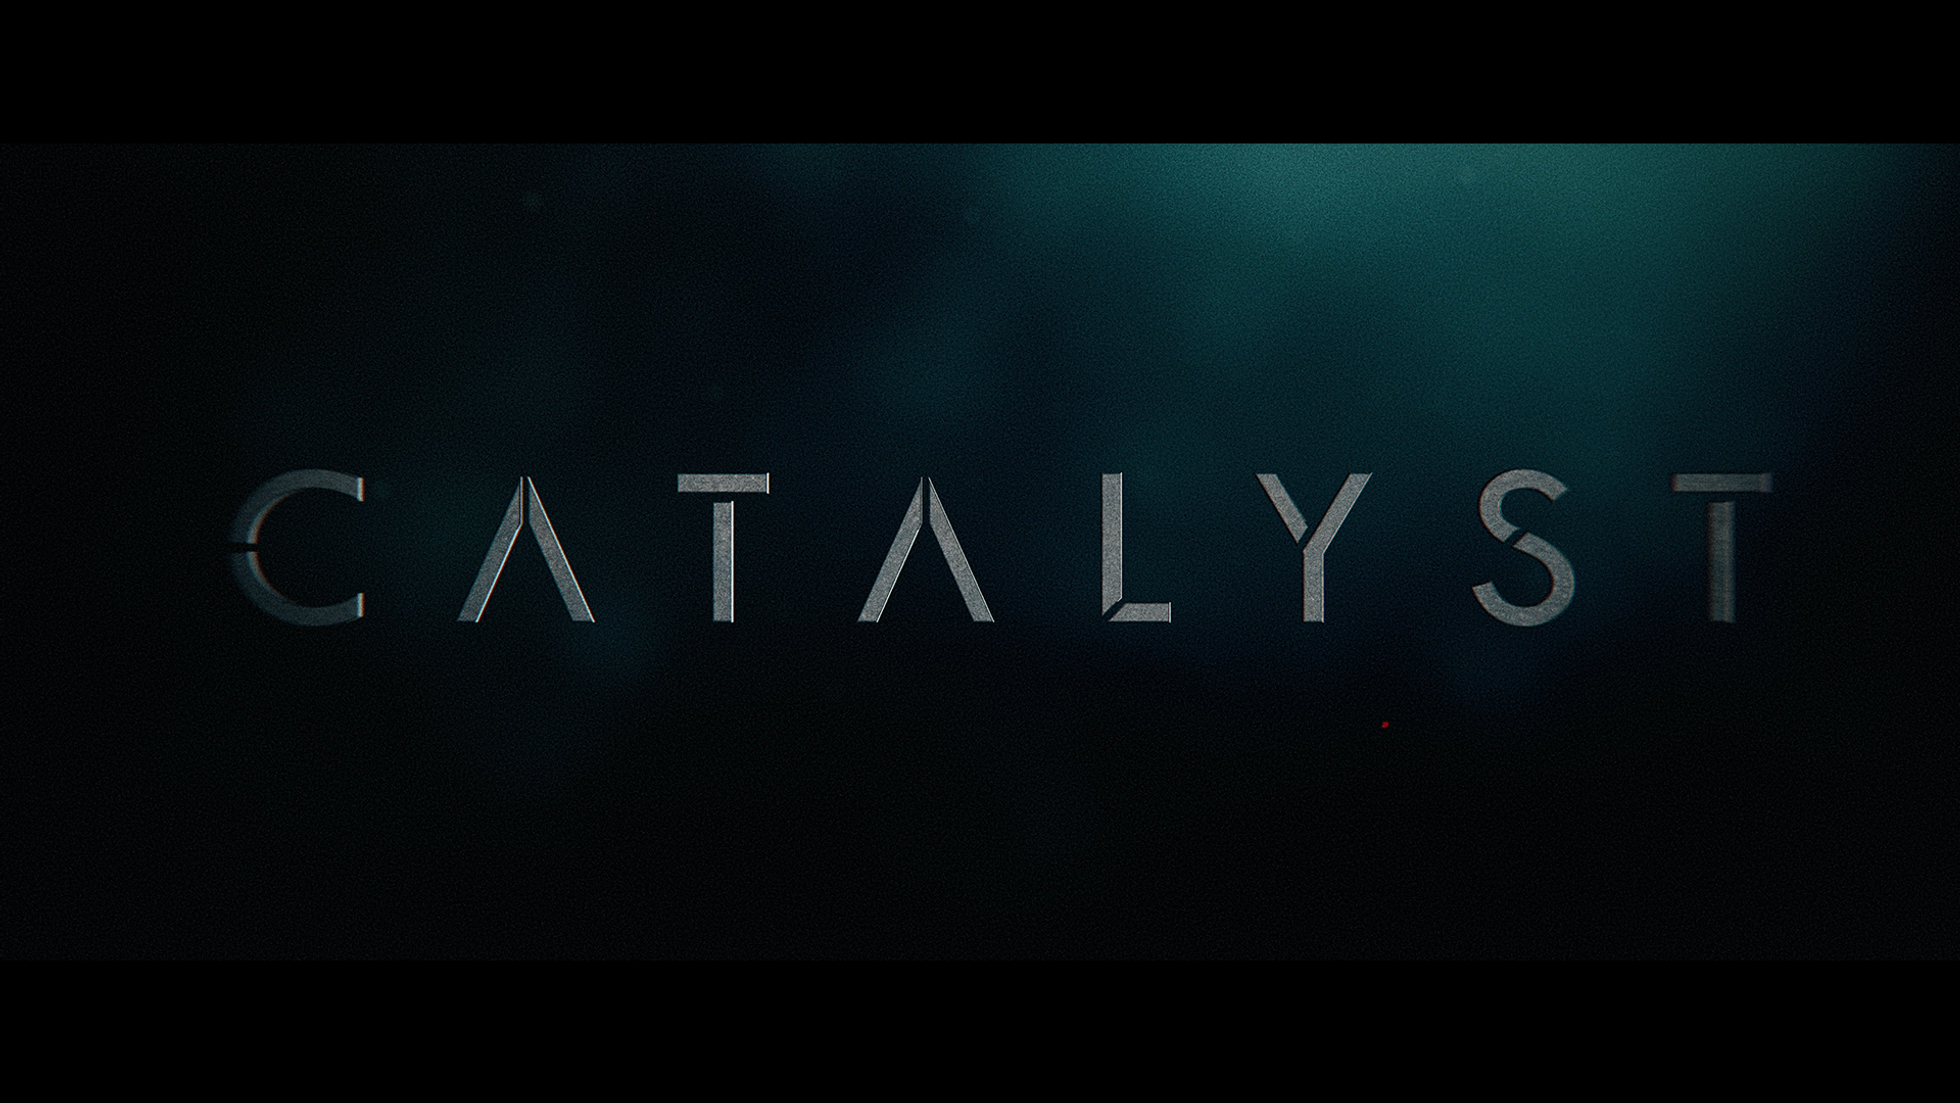 Catalyst (Festival Trailer)